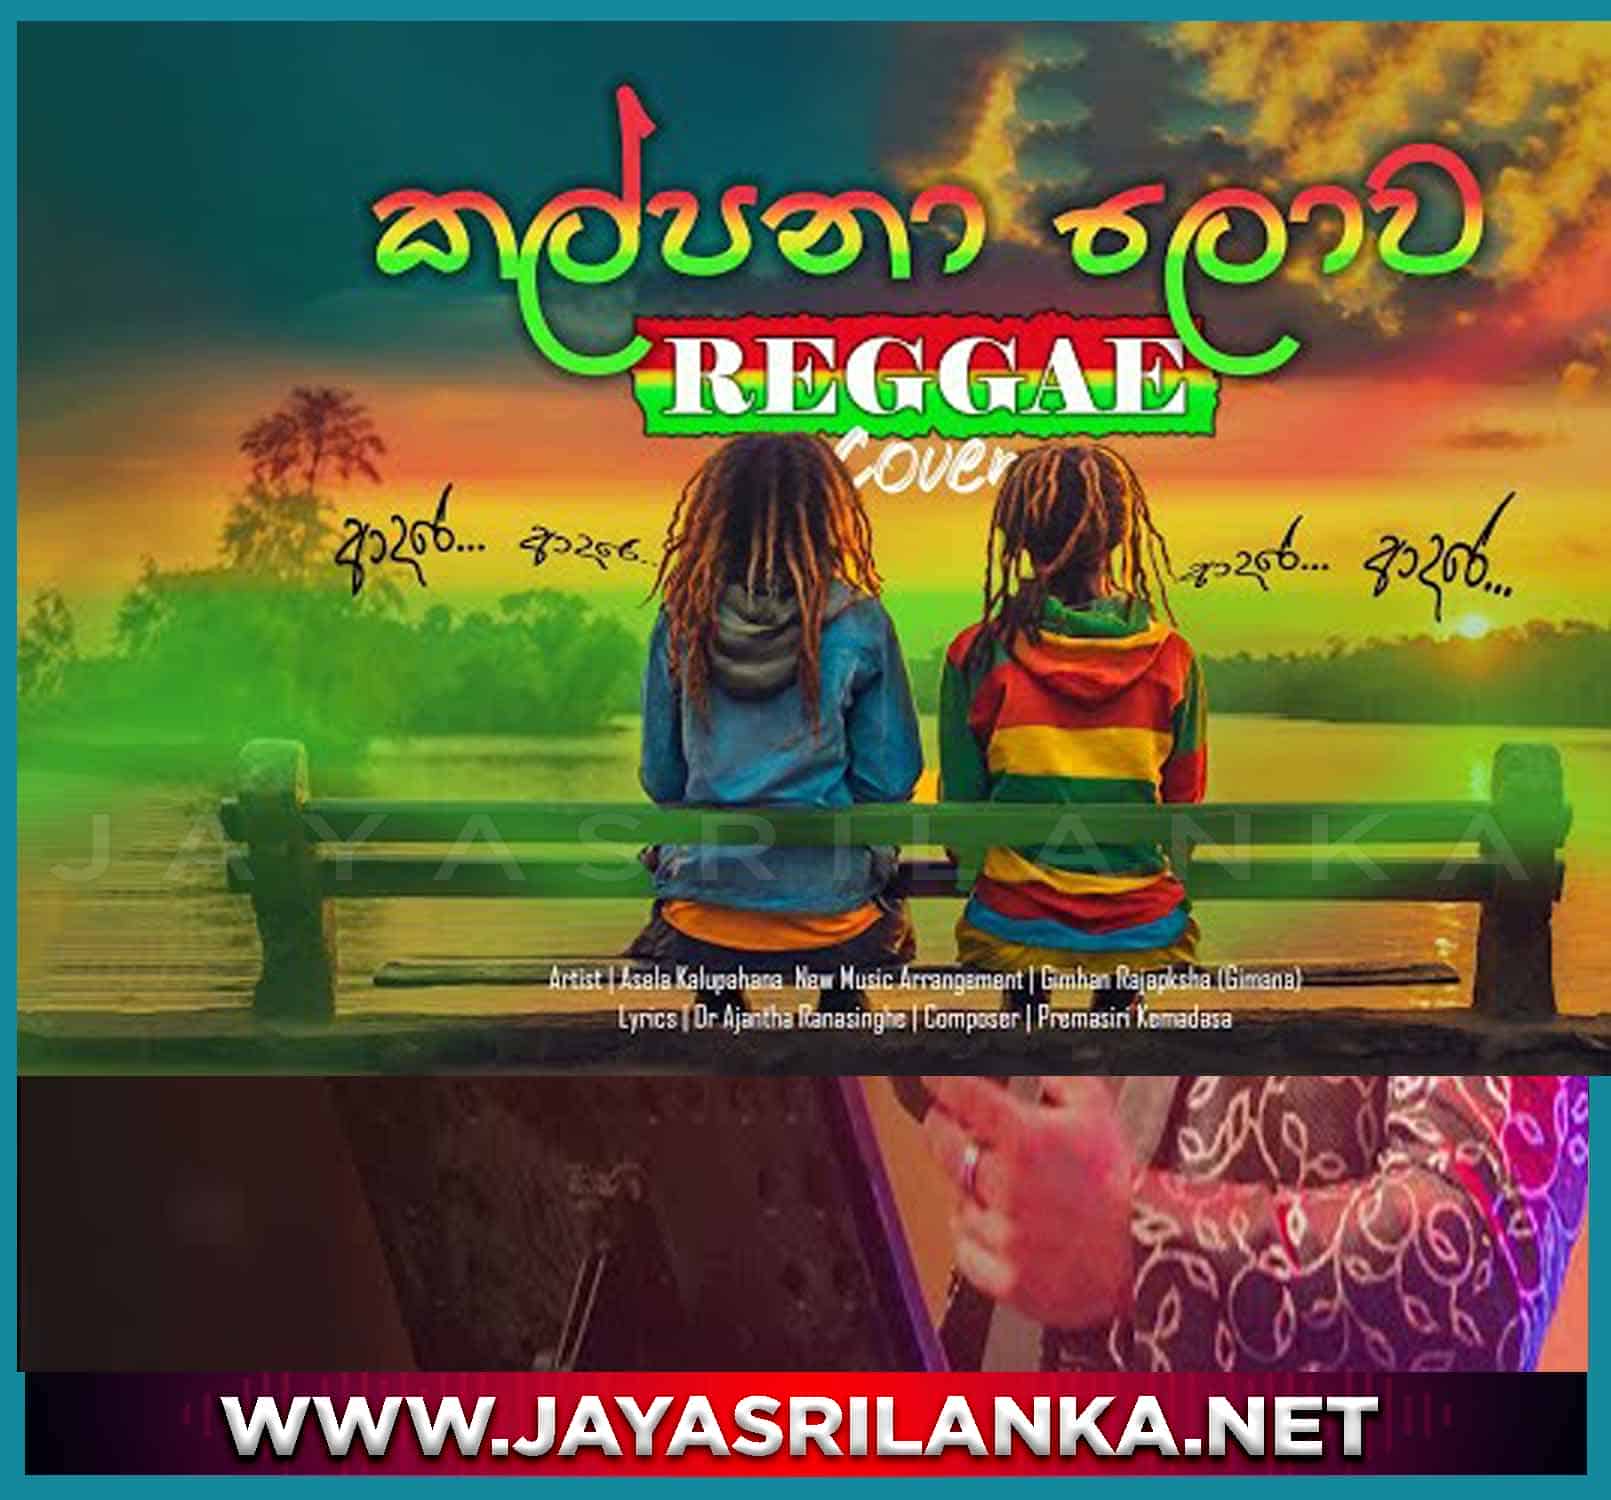 jayasrilanka ~ Kalpana Lowa Reggae Cover - Asela Kalupahana